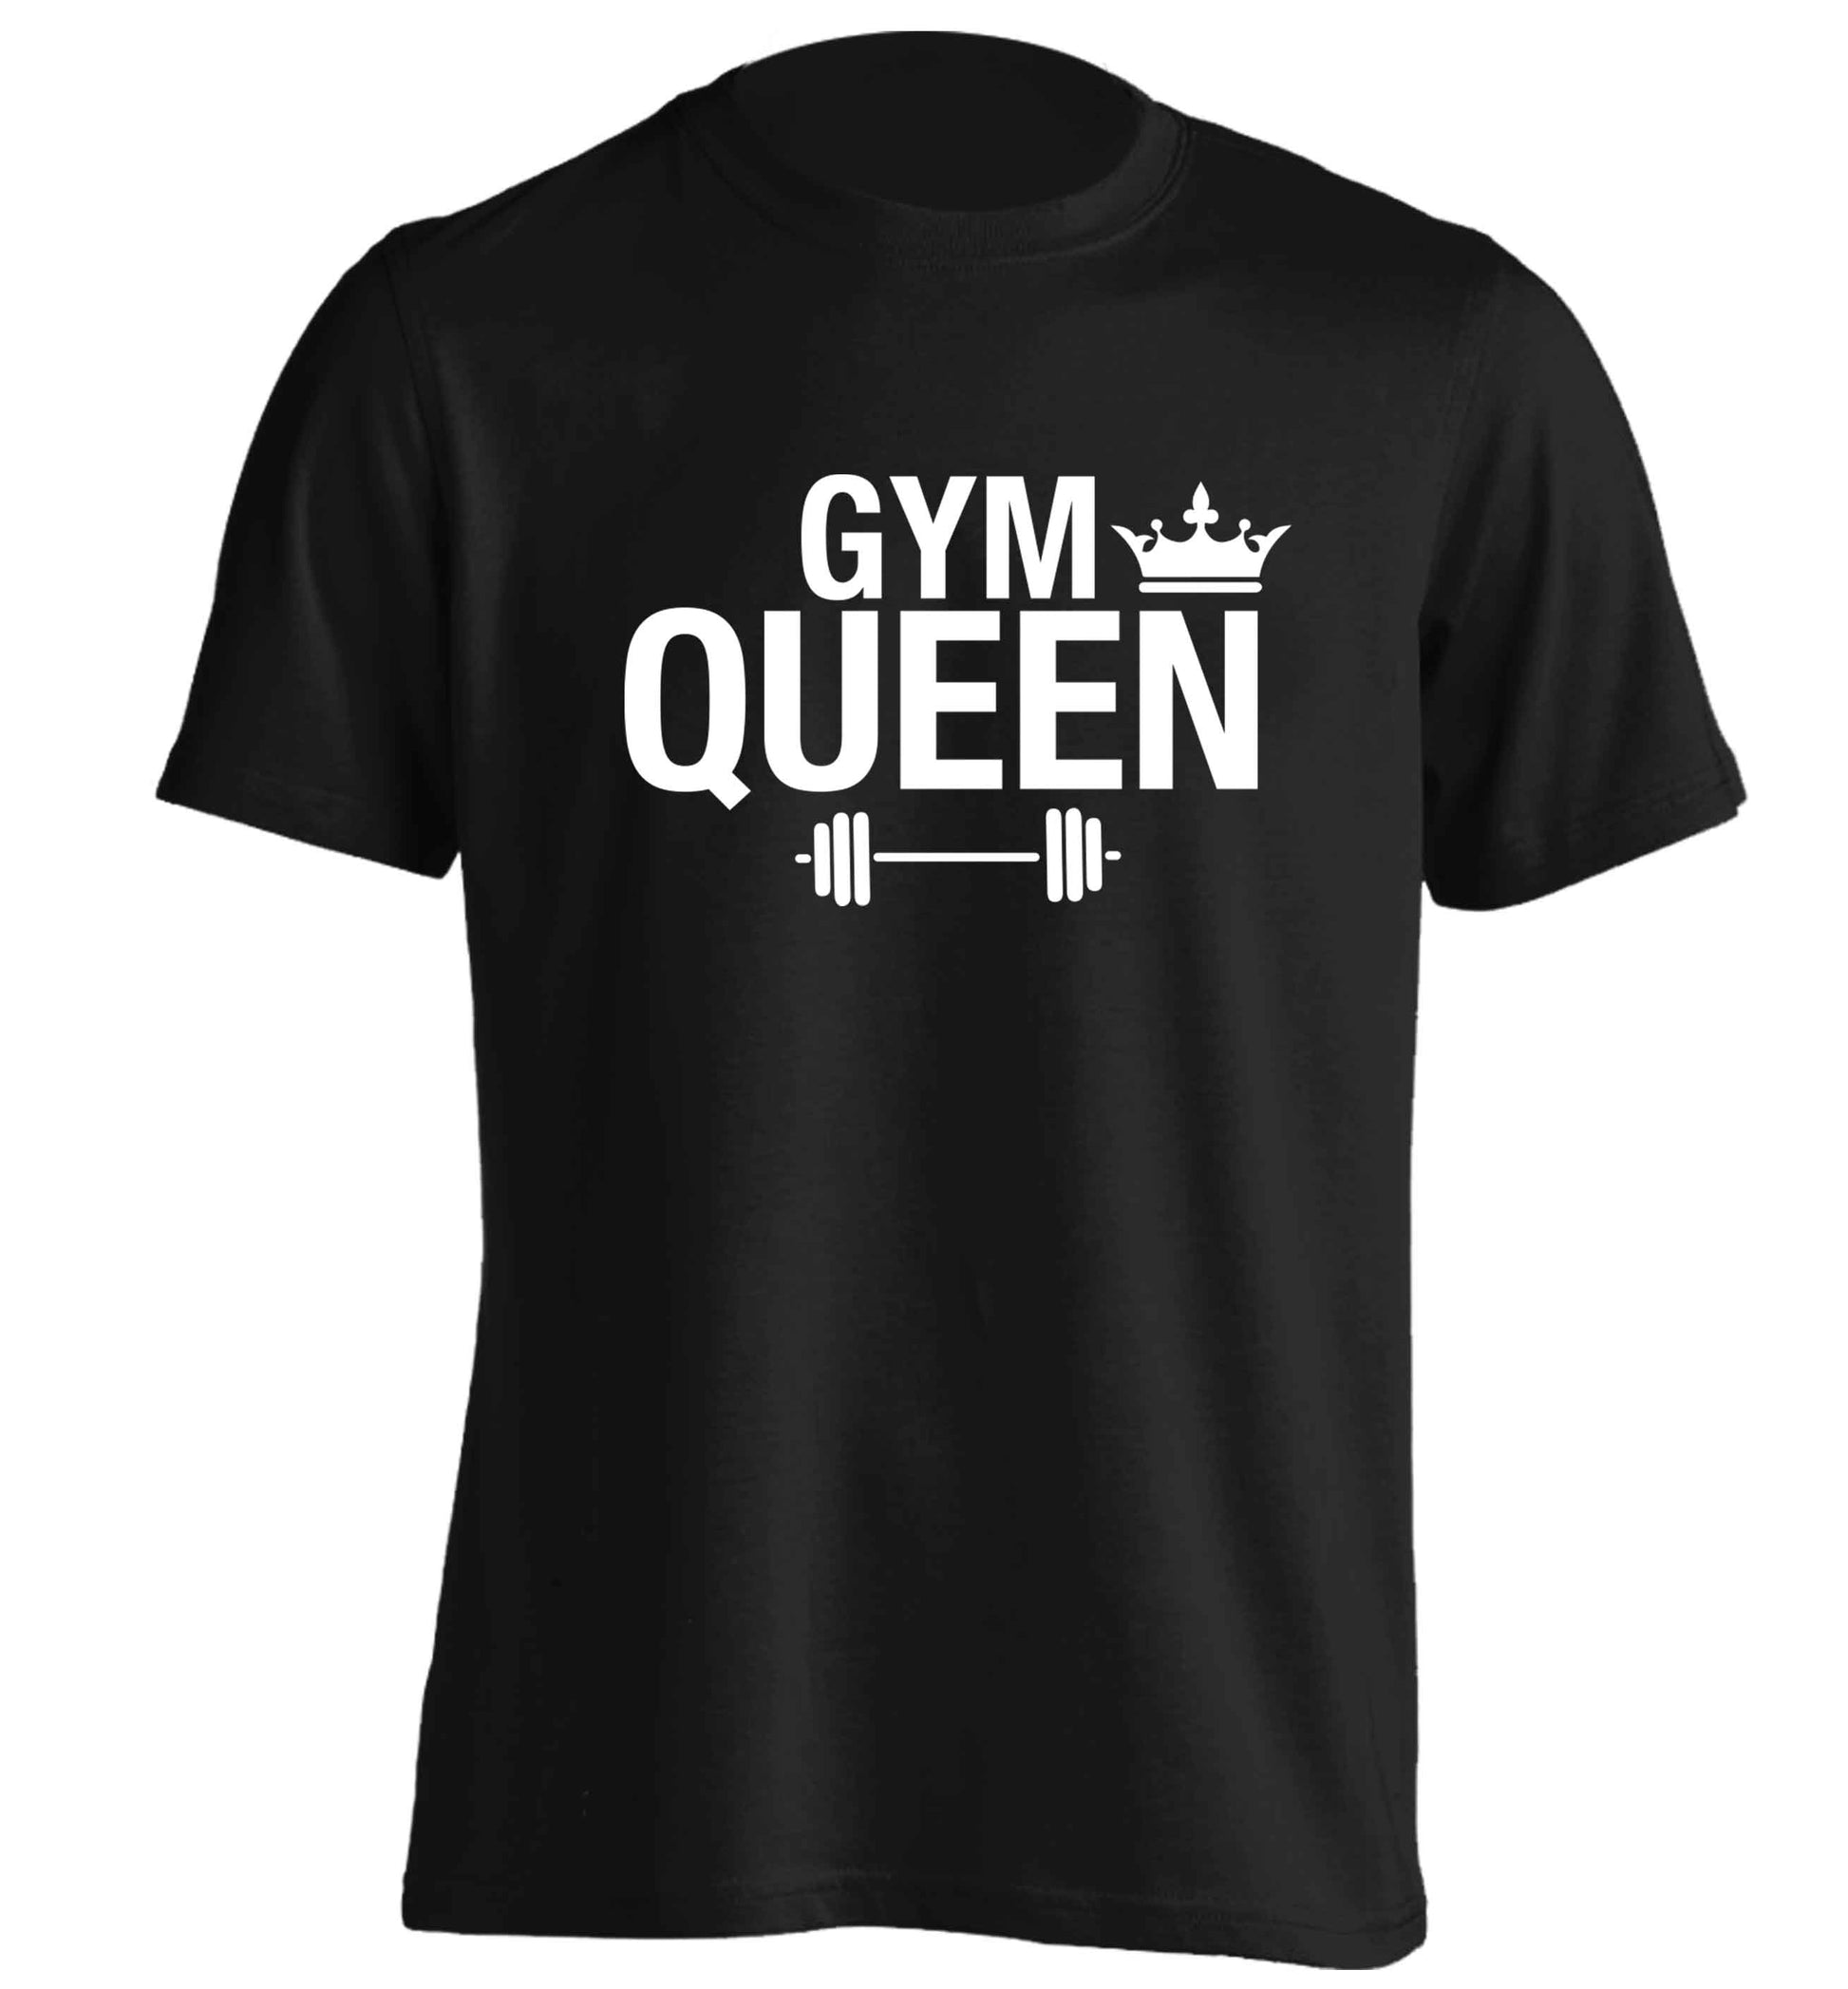 Gym queen adults unisex black Tshirt 2XL